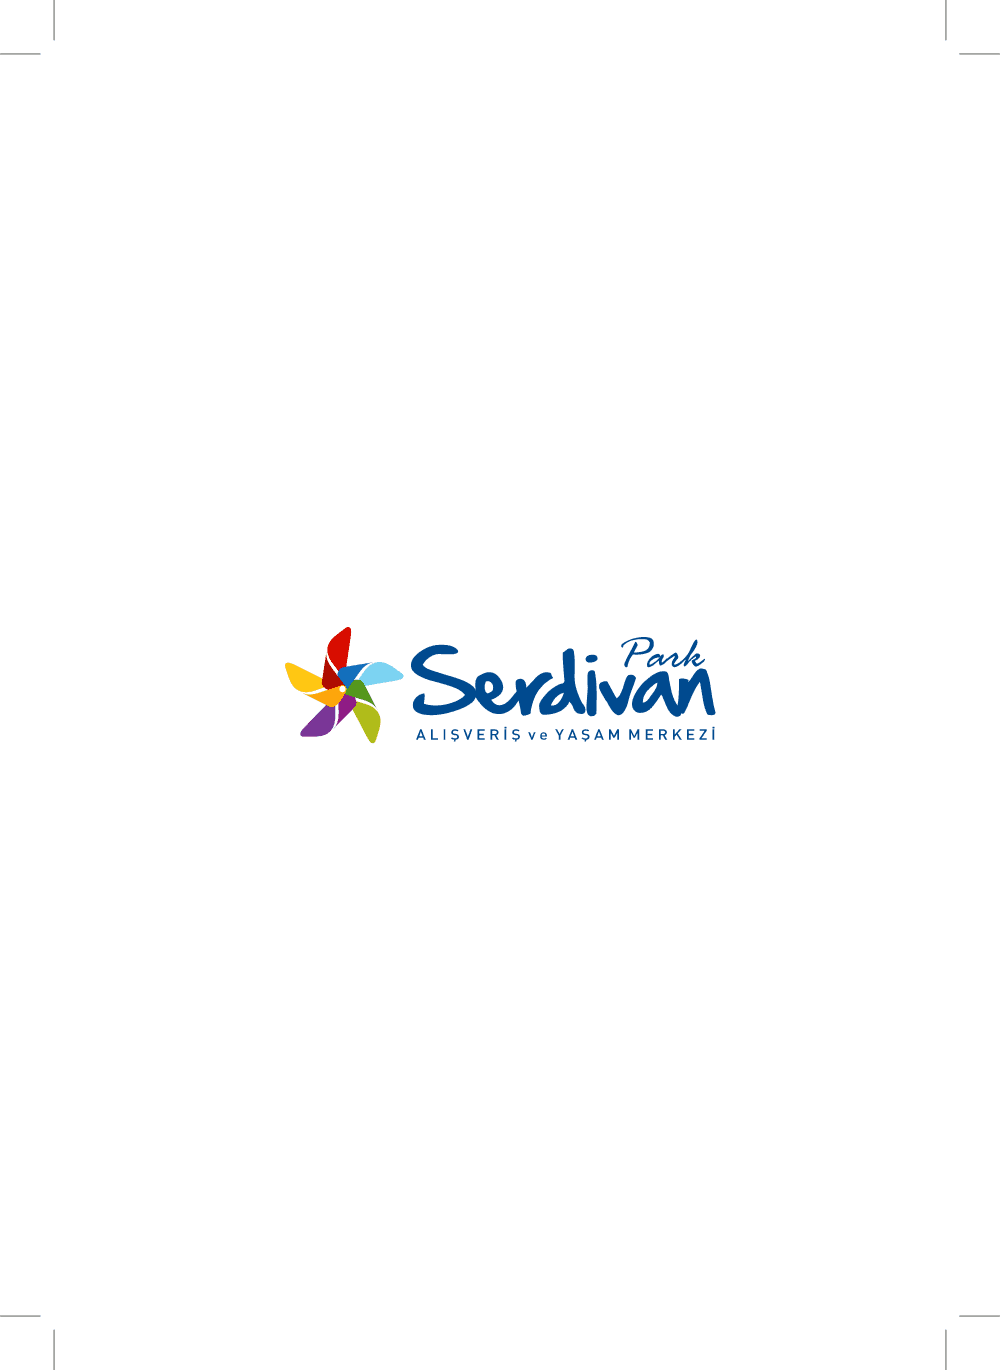 Serdivan Park Logo download